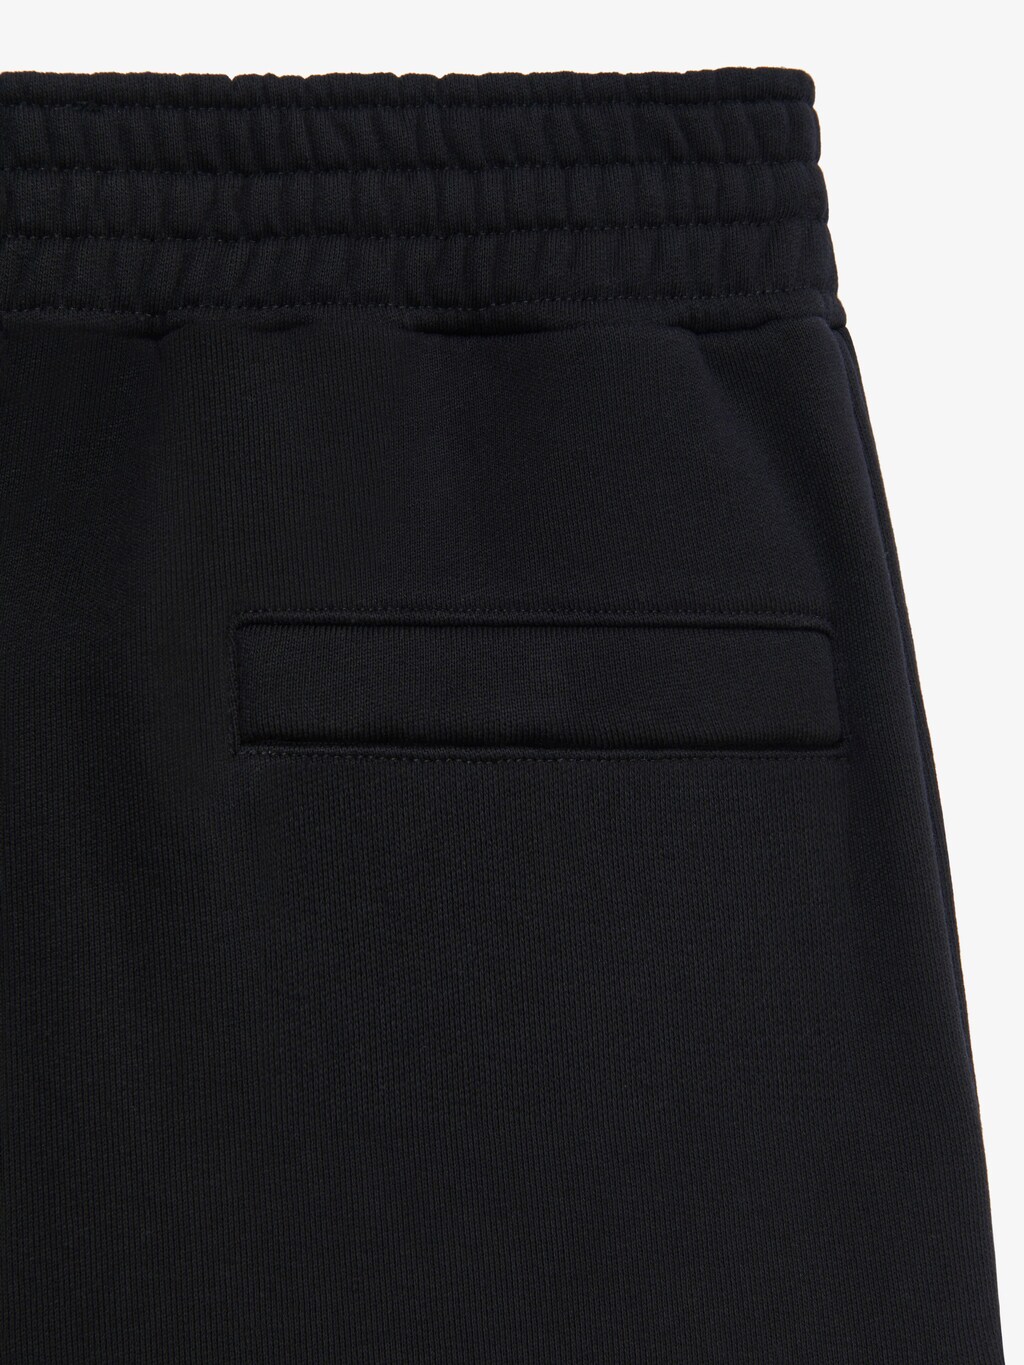 G Rider jogger pants - black | Givenchy US